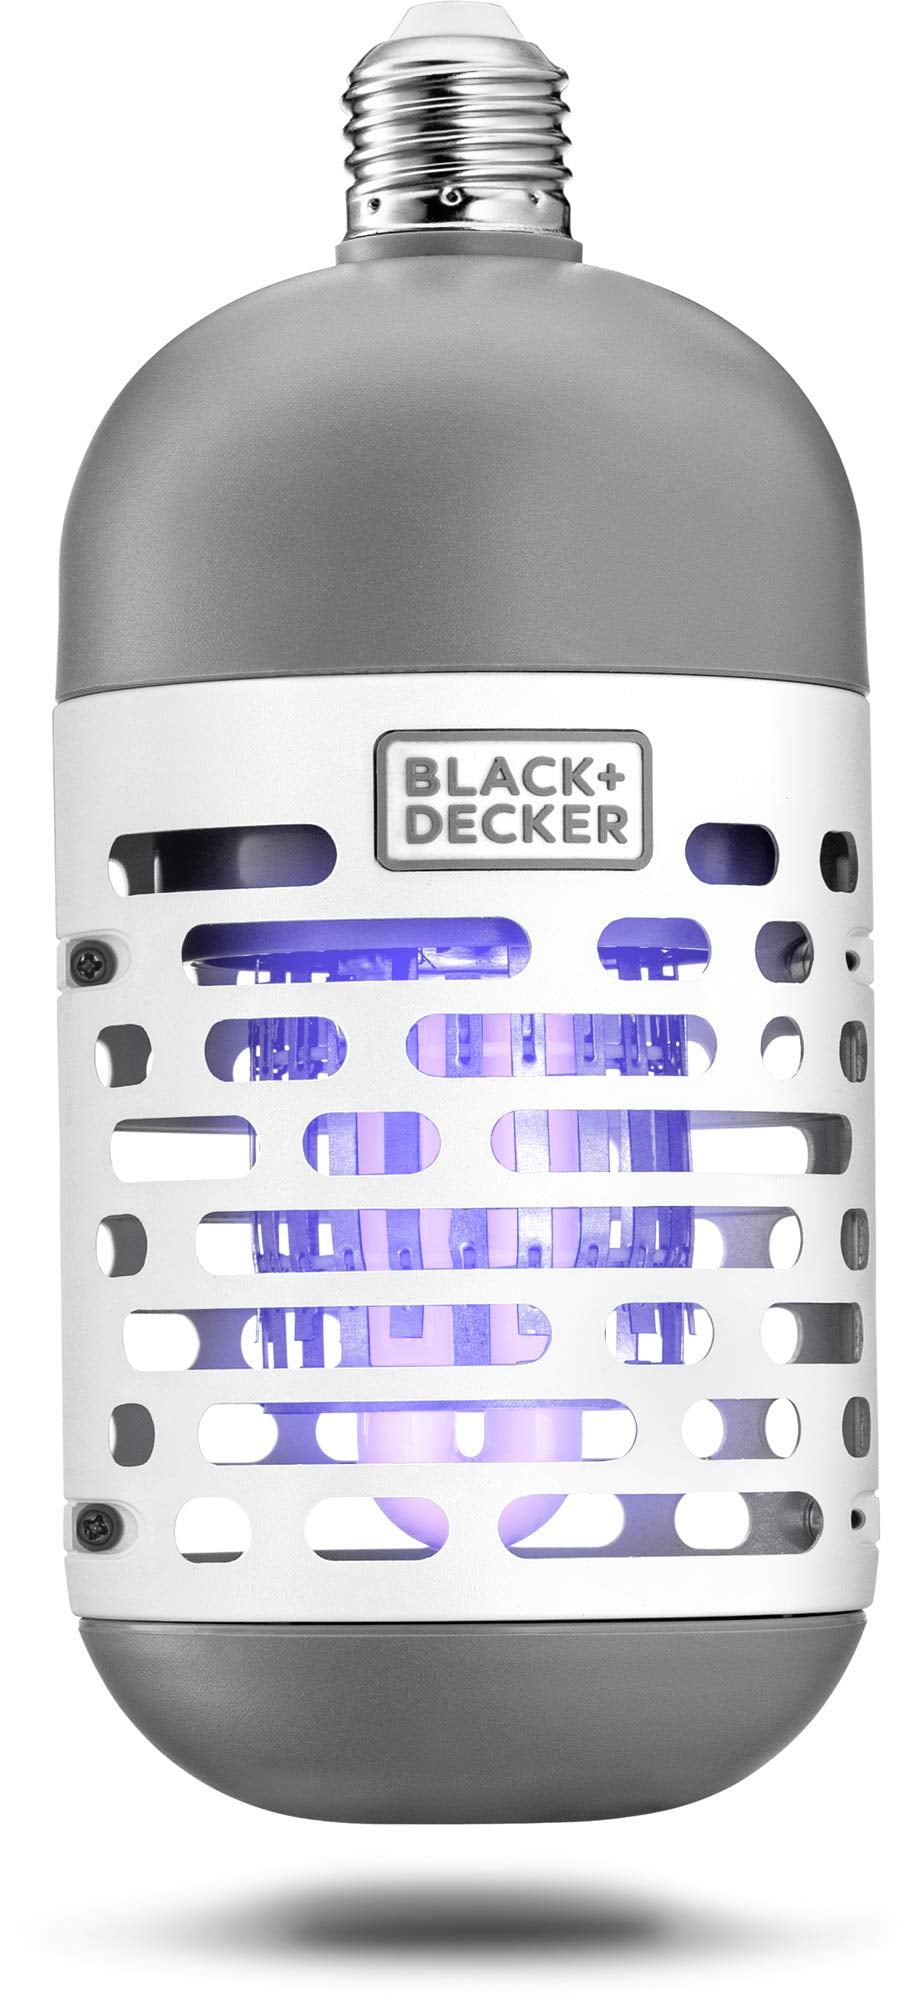 Black+decker 10-Watt Electric Bug Zapper | BDXPC941